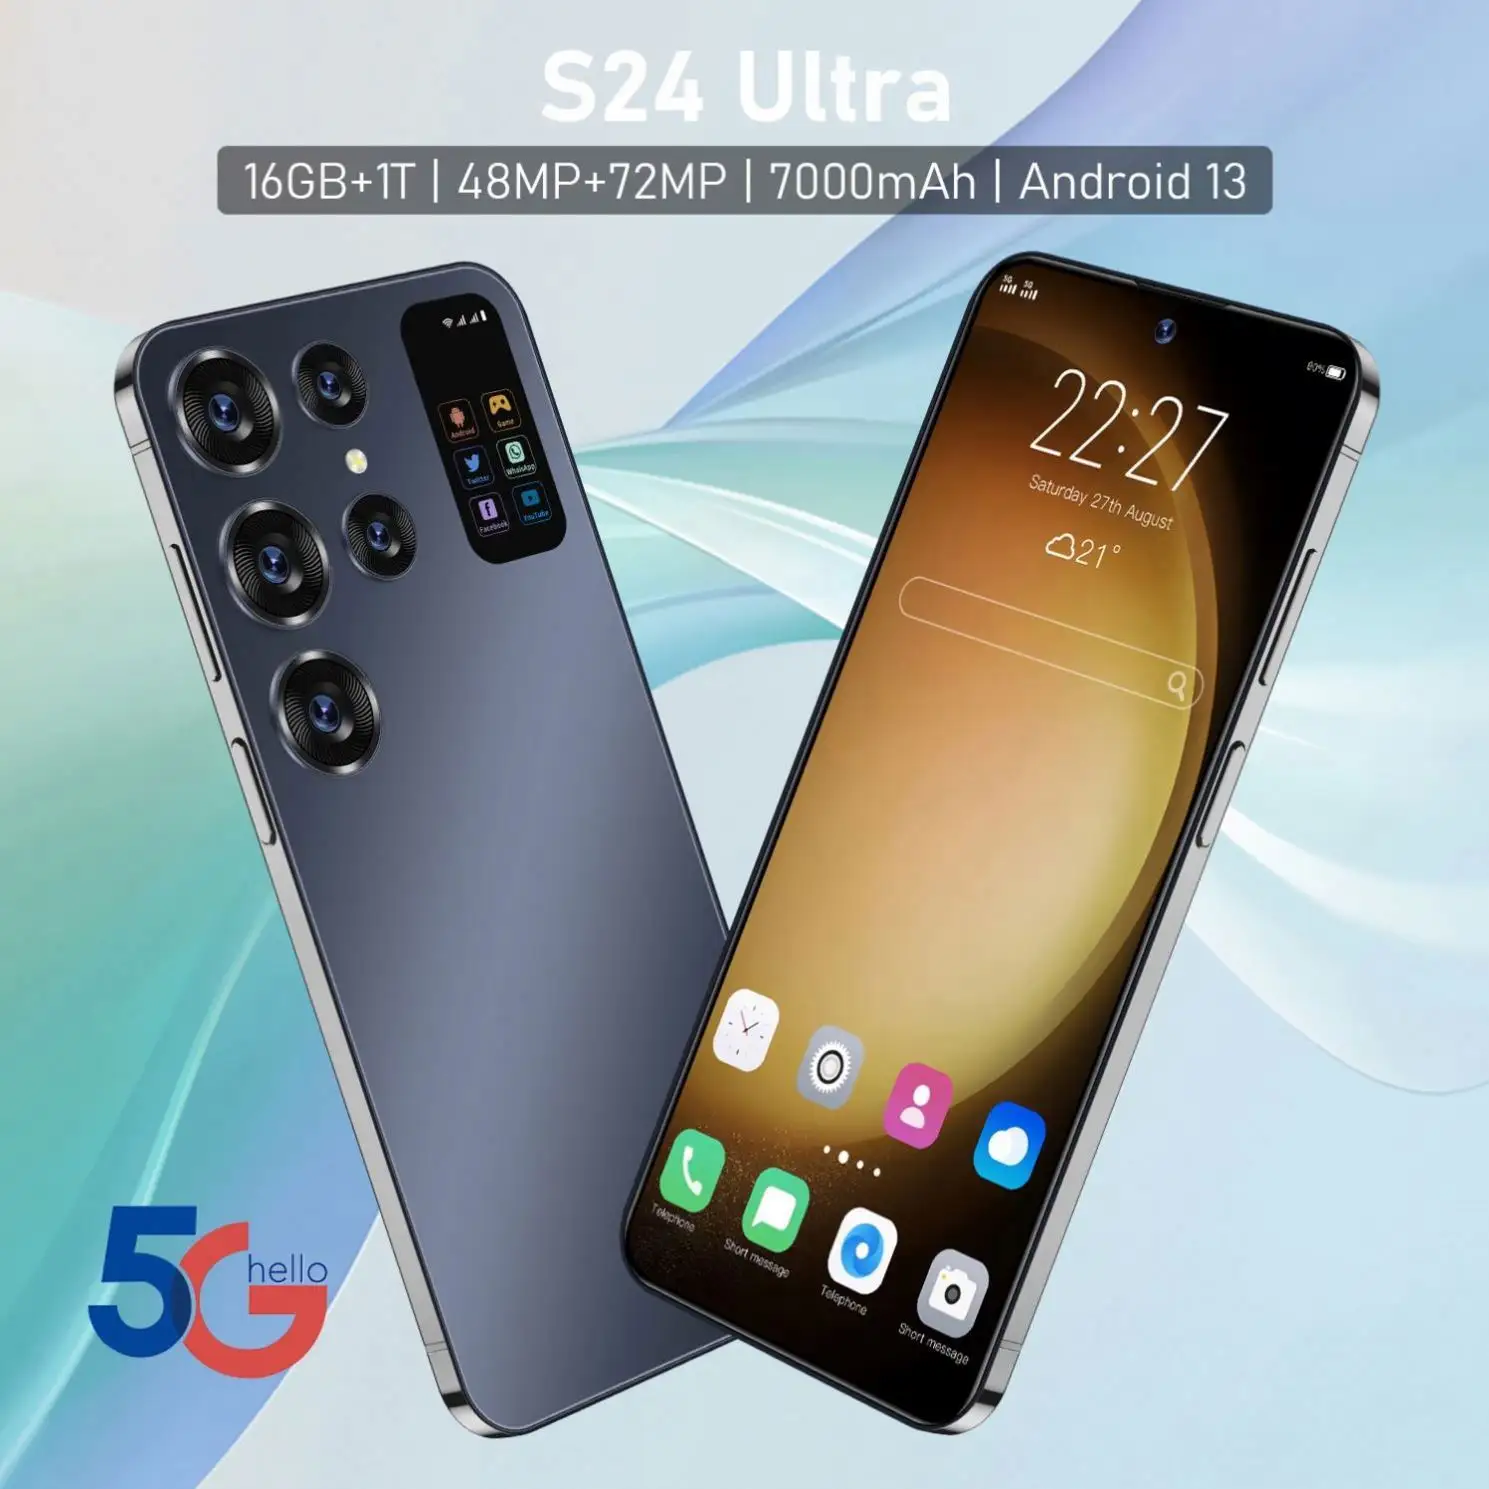 S24 Ultra nouveau original meilleure vente affaires téléphone jeu téléphone mobile en gros android téléphone prix usine 3g 4g 5g smartphone